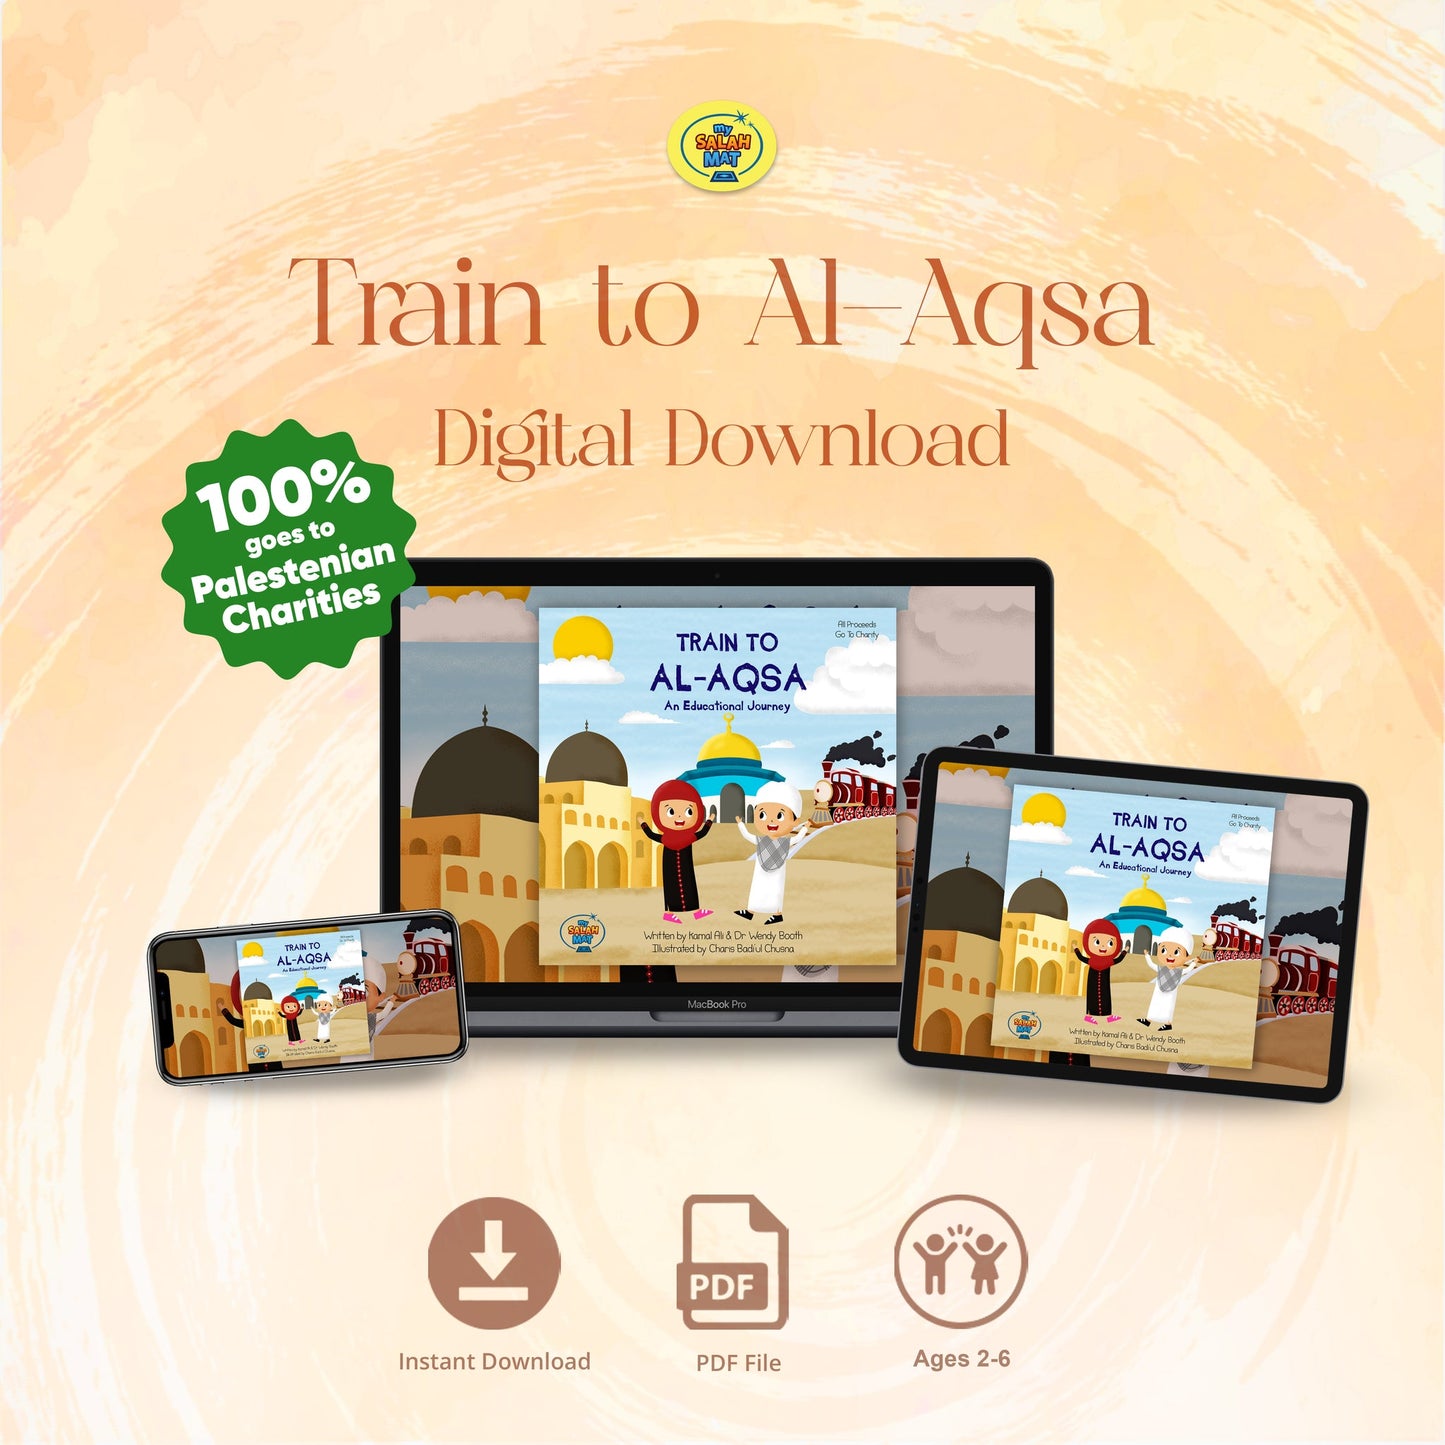 Train to Al-Aqsa - Digital Download